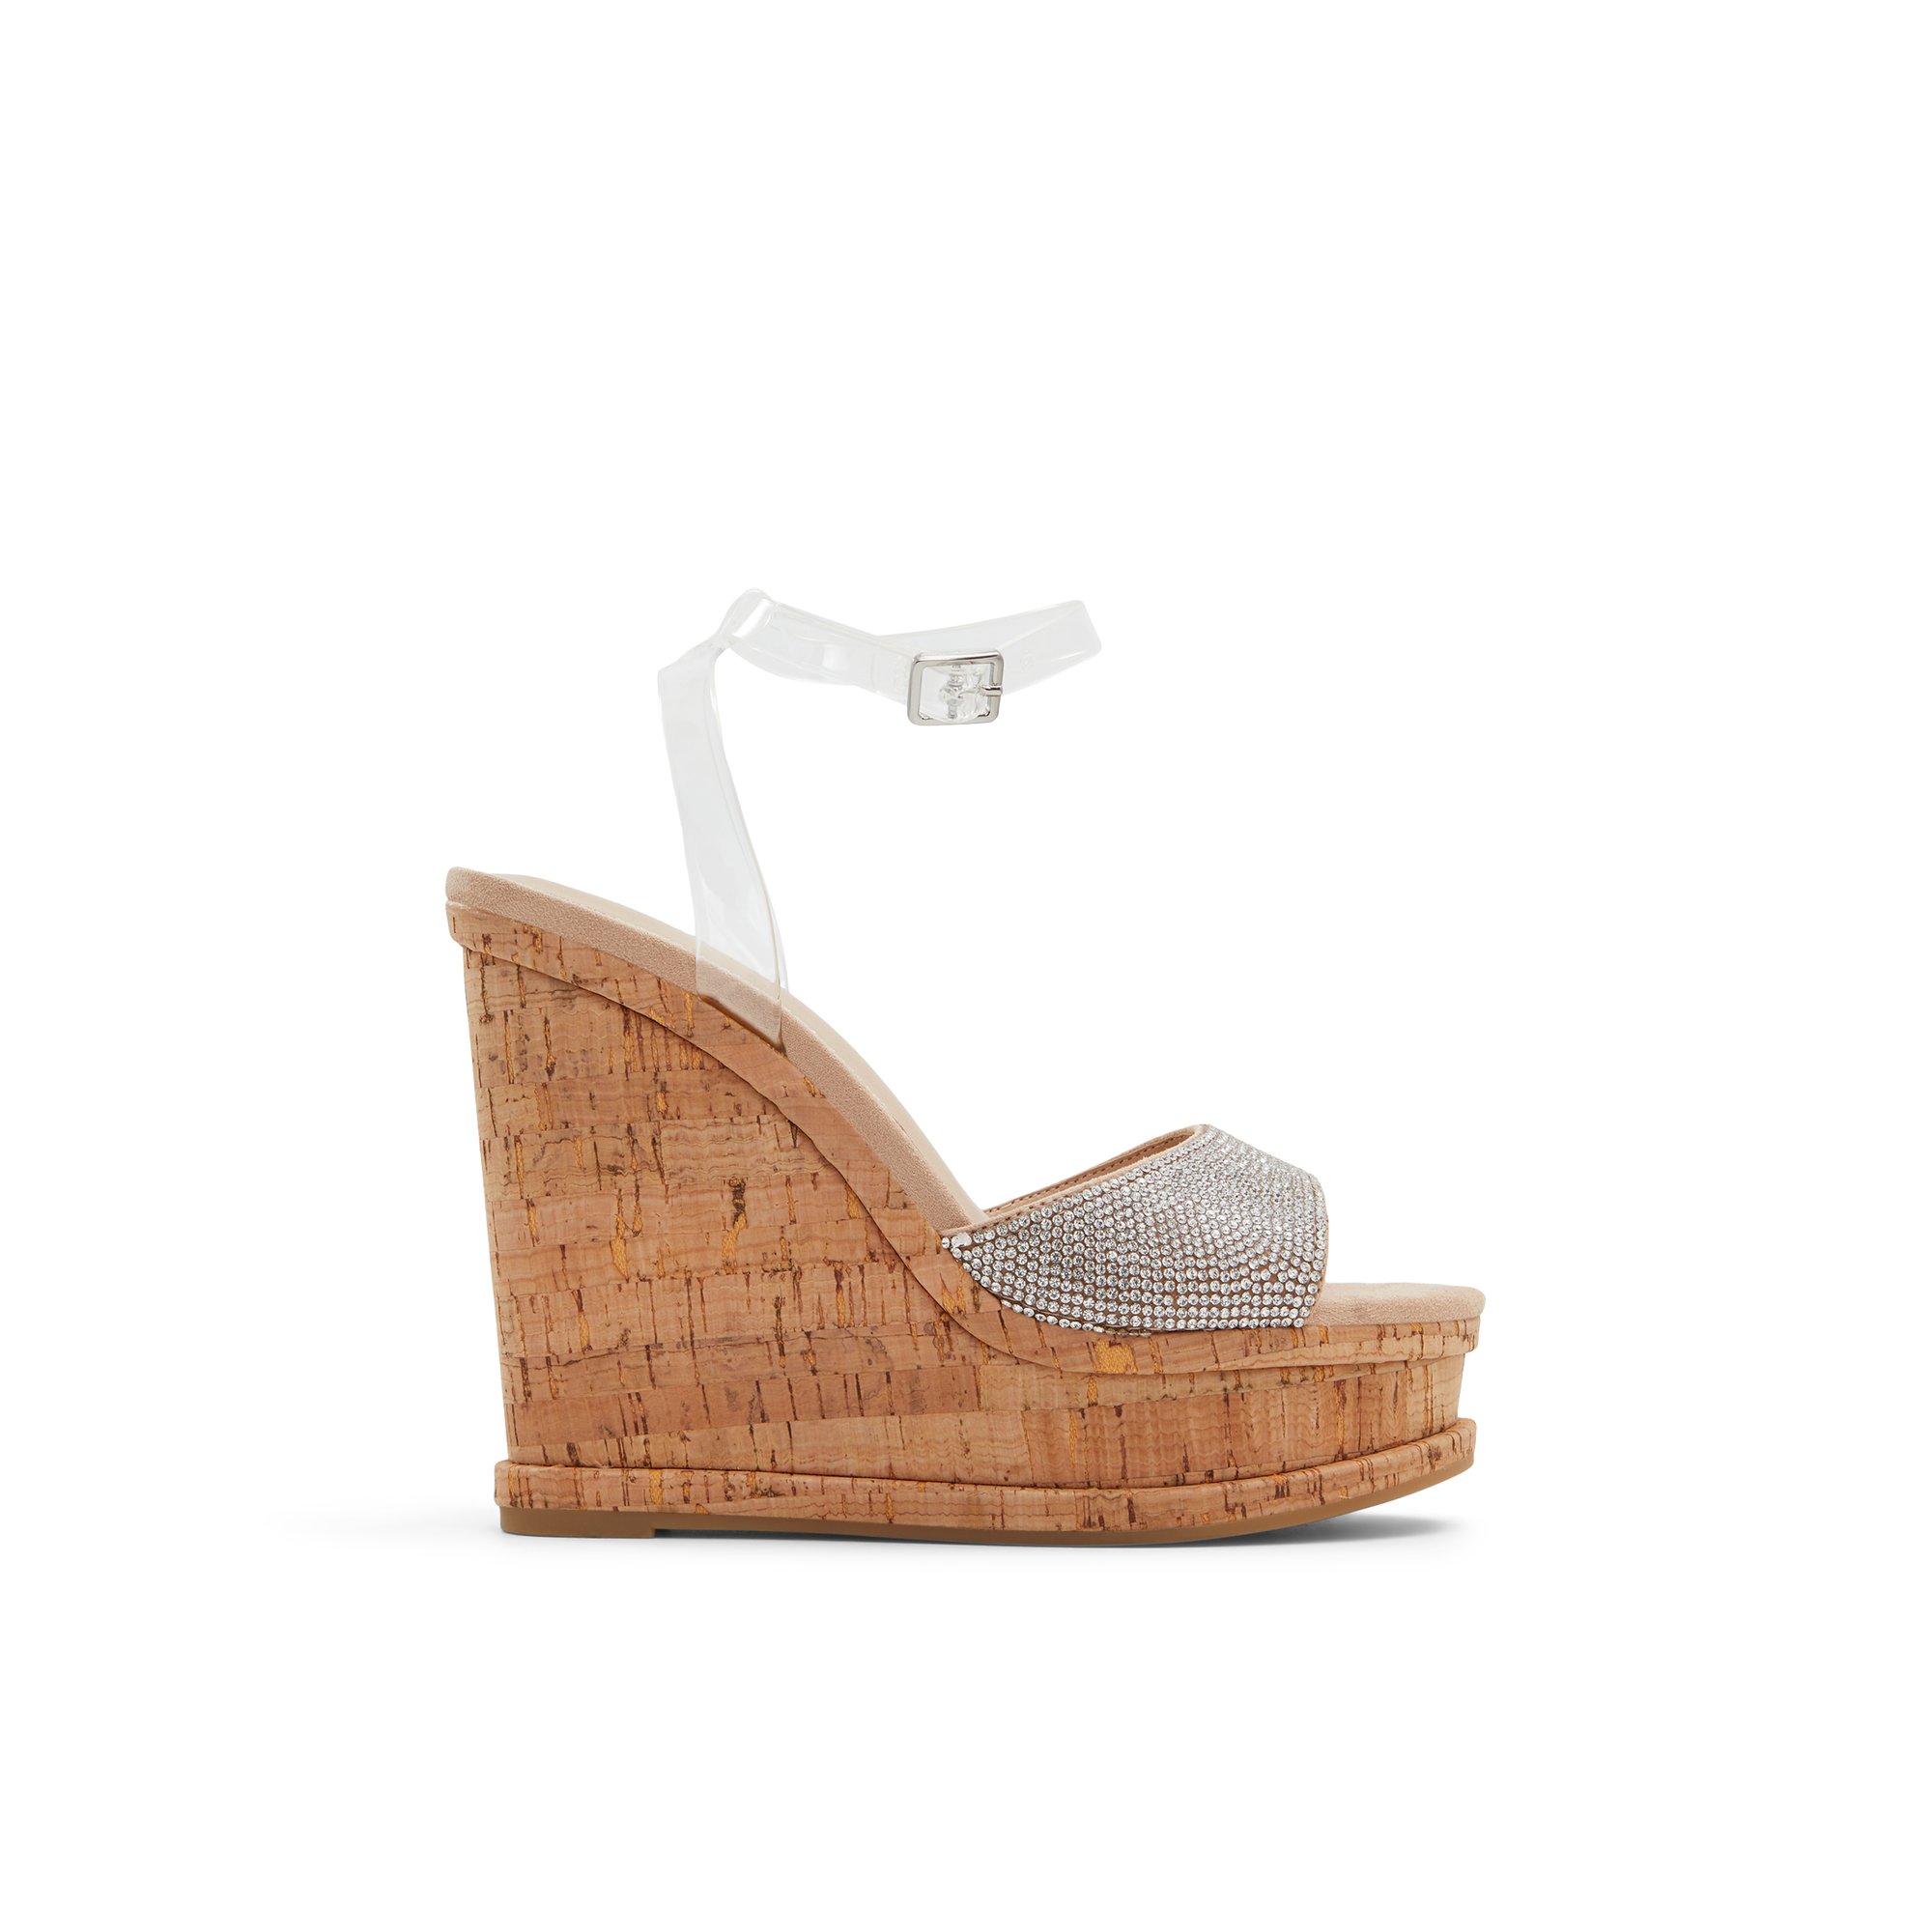 ALDO Ratelaar - Women's Wedge Sandals - Beige